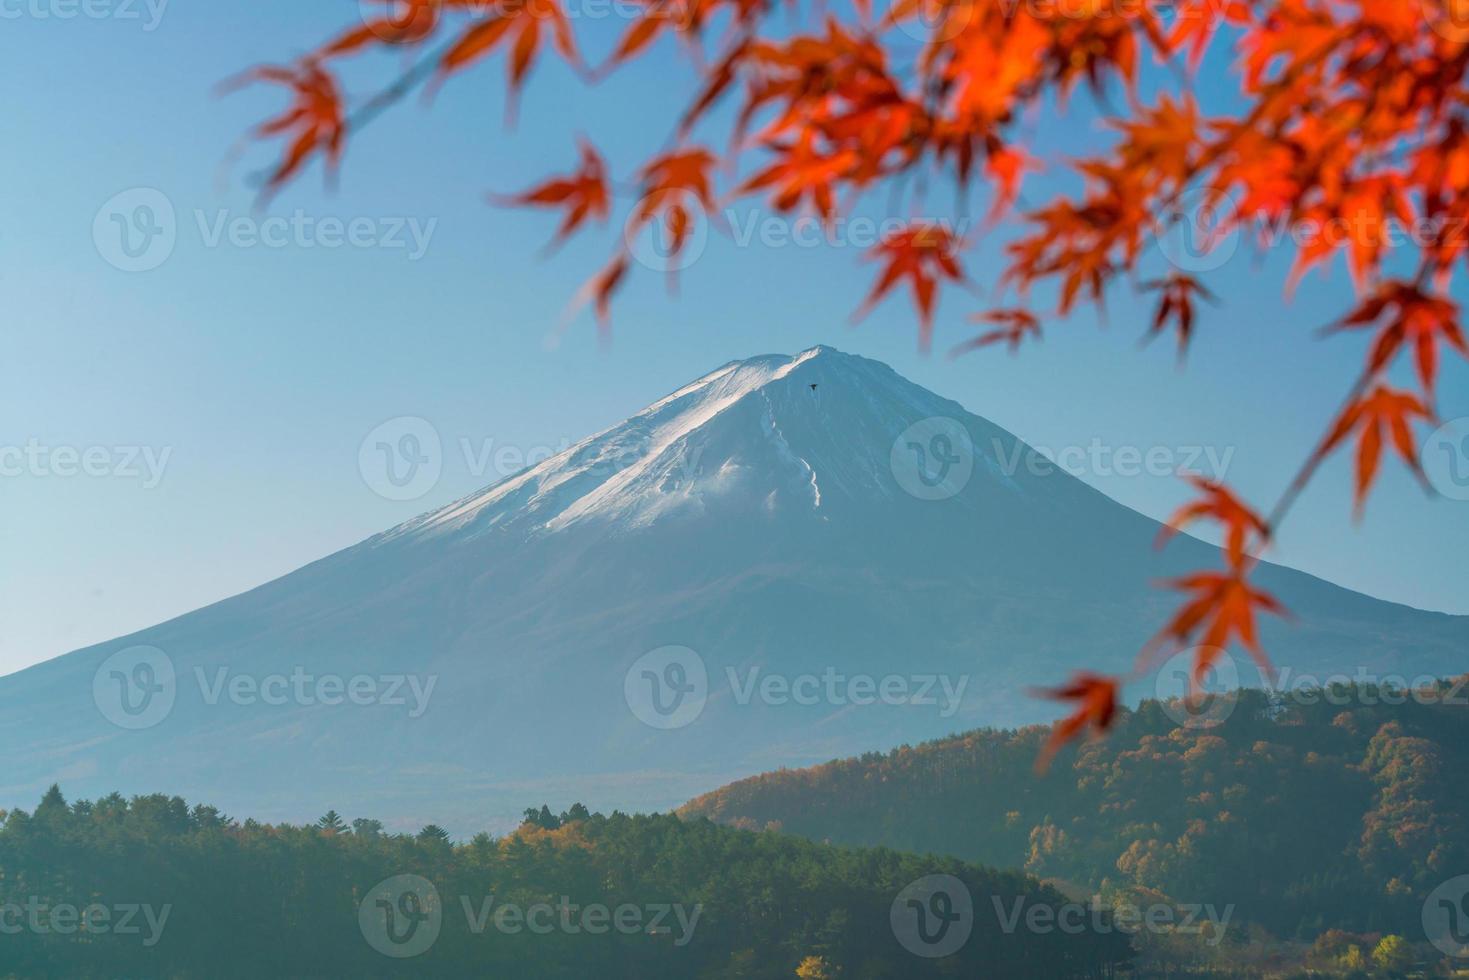 mt. fuji en automne avec des feuilles d'érable rouges photo